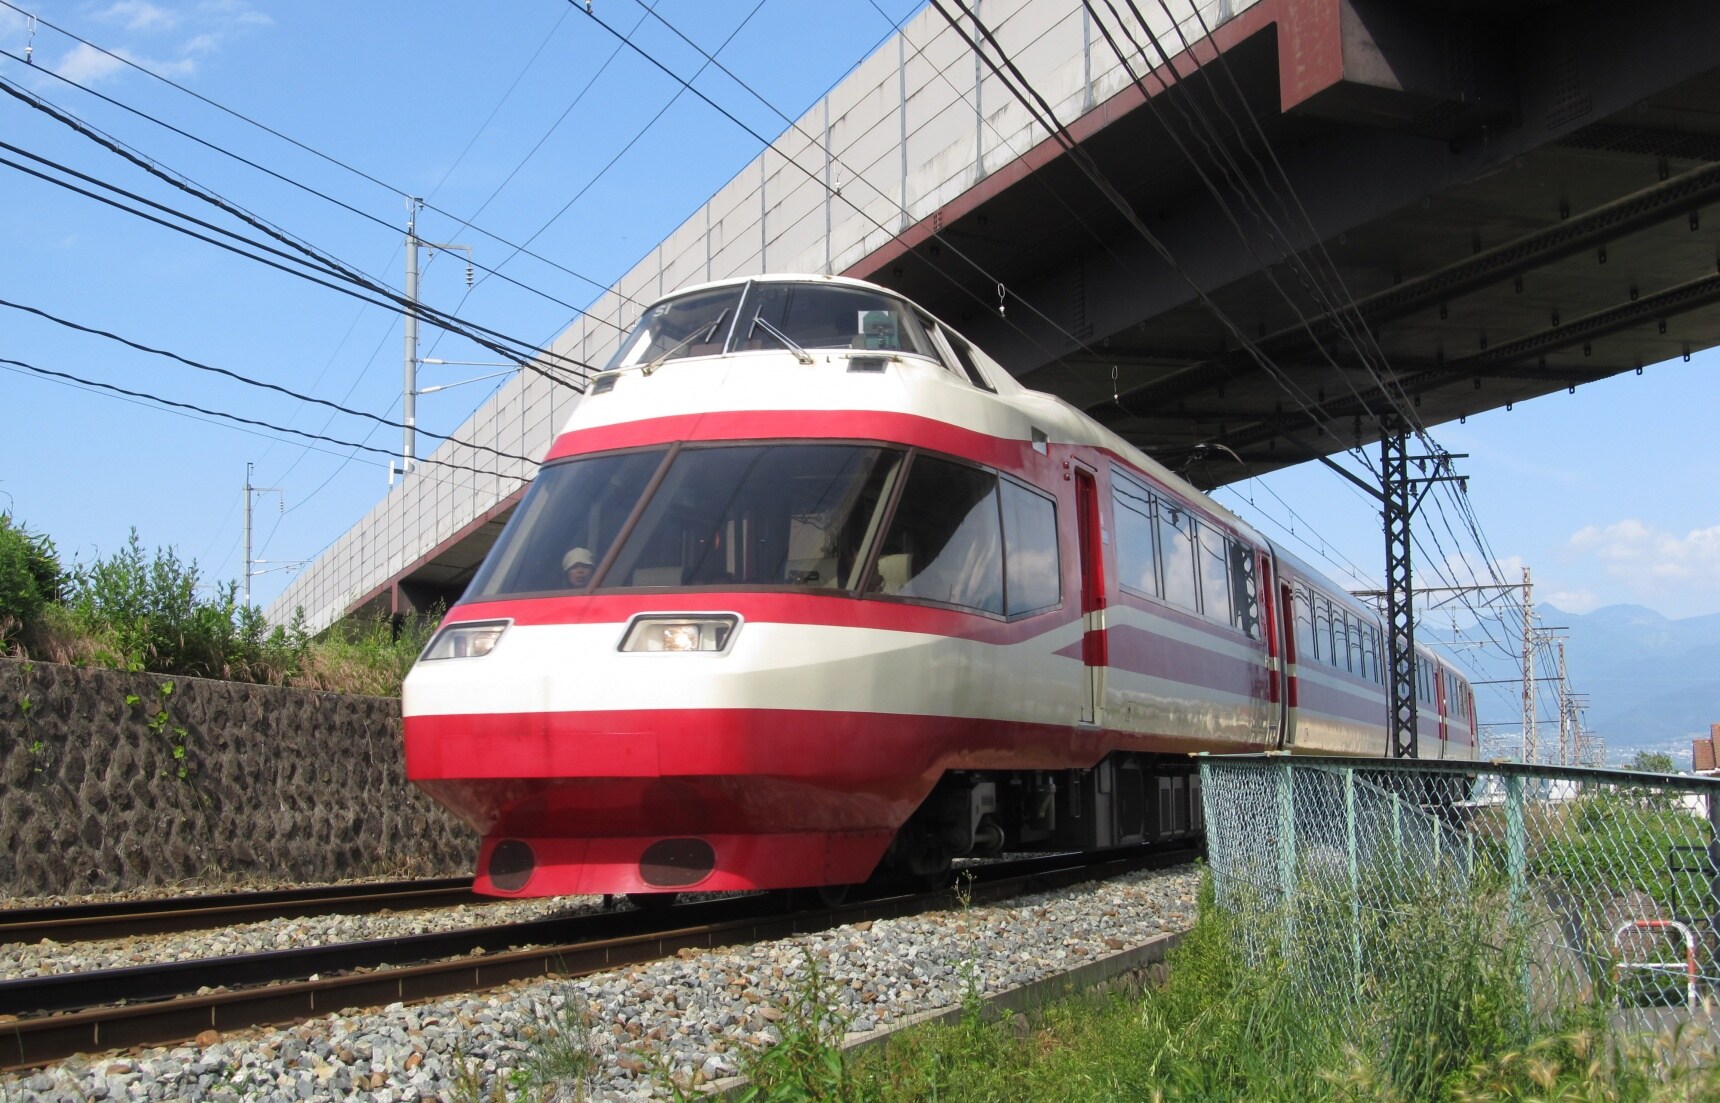 5 ขบวนรถไฟท่องเที่ยวสุดพิเศษใน “โฮคุริคุ”